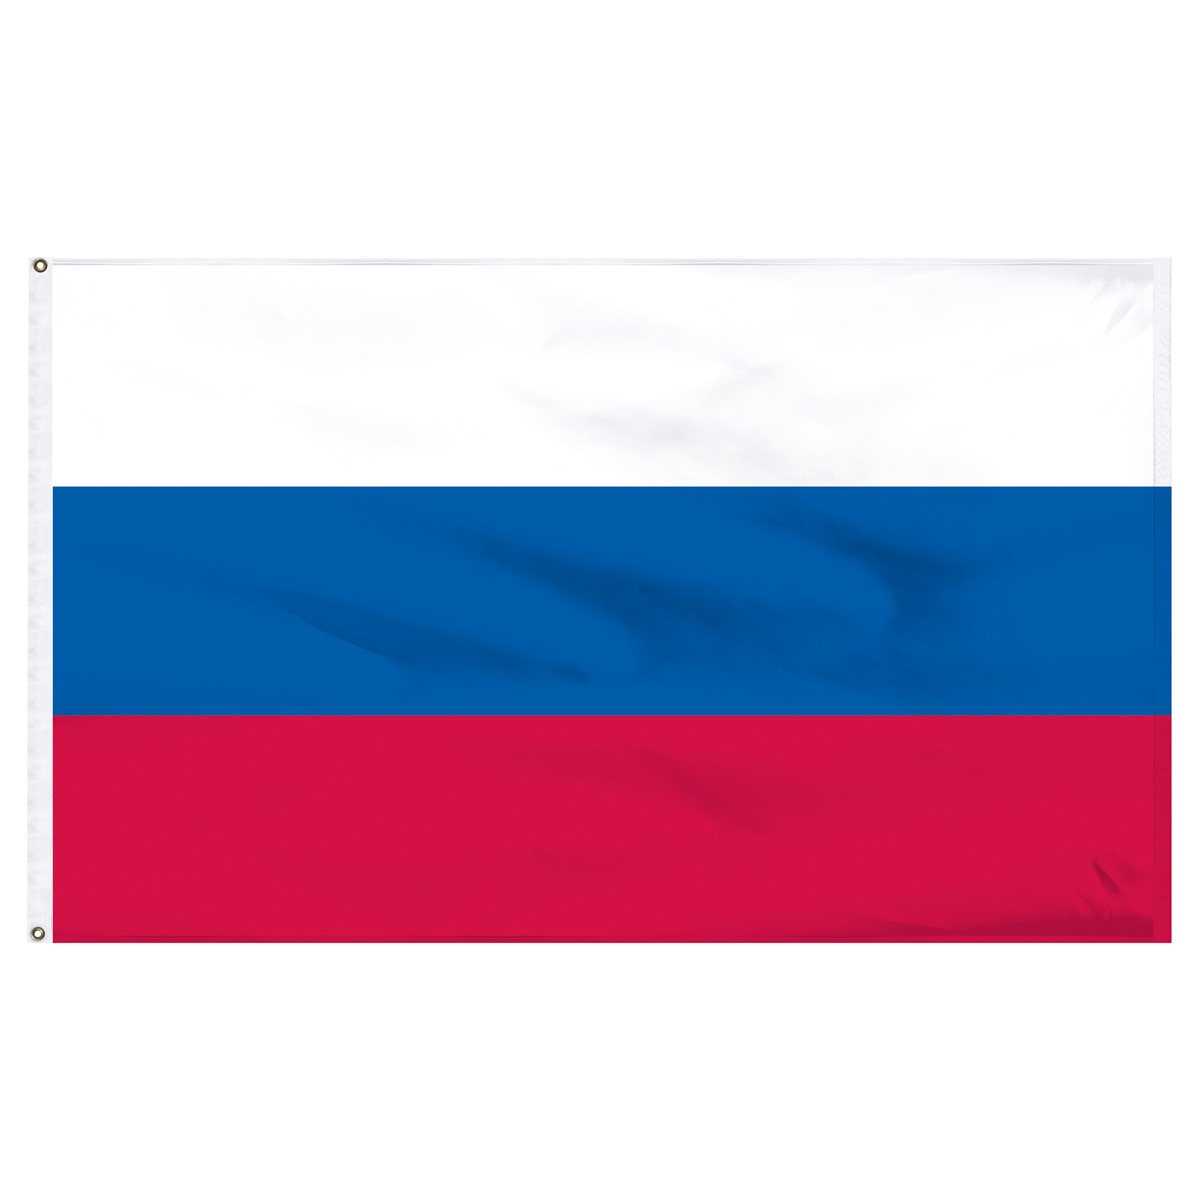 Russia Beach Flag and Sailing Flag